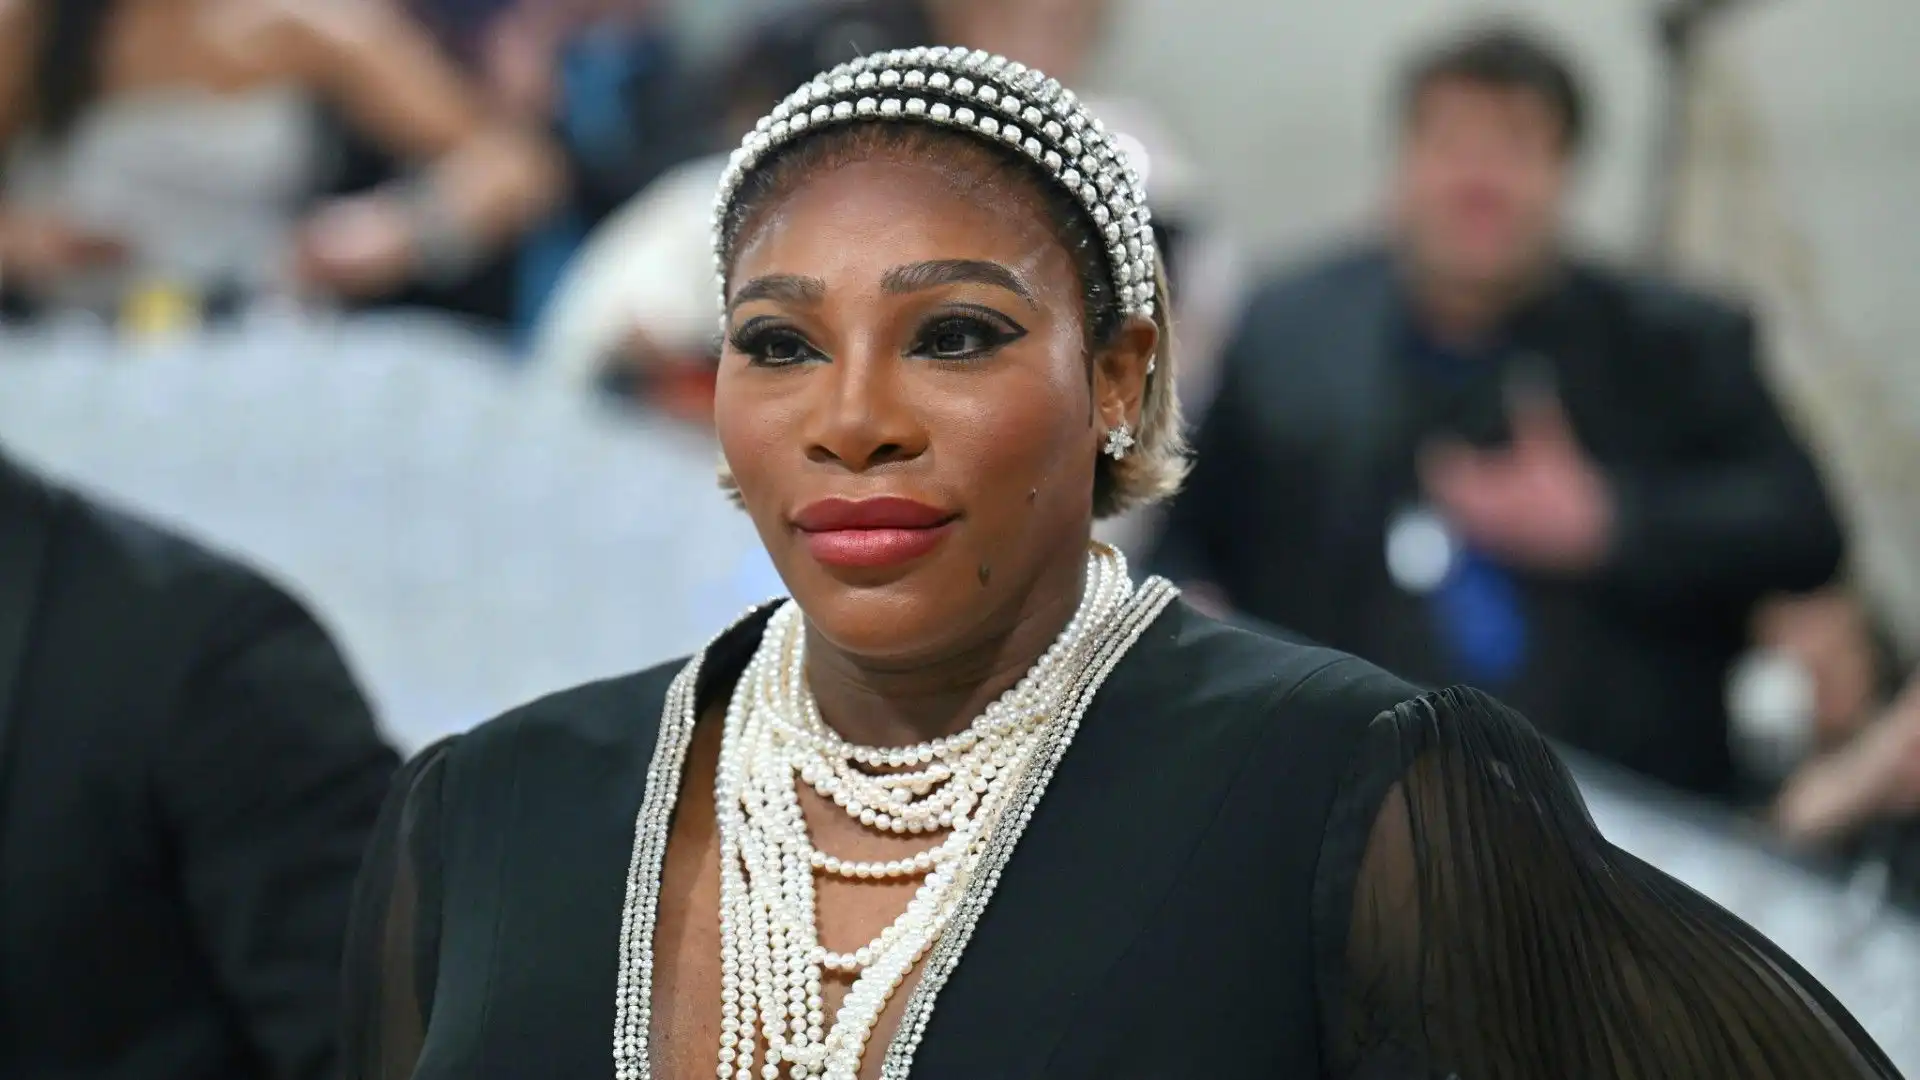 L'ex stella della racchetta ha fondato la Serena Williams Fund, un'organizzazione benefica che sostiene l'istruzione e l'empowerment delle donne e dei giovani nelle comunità svantaggiate